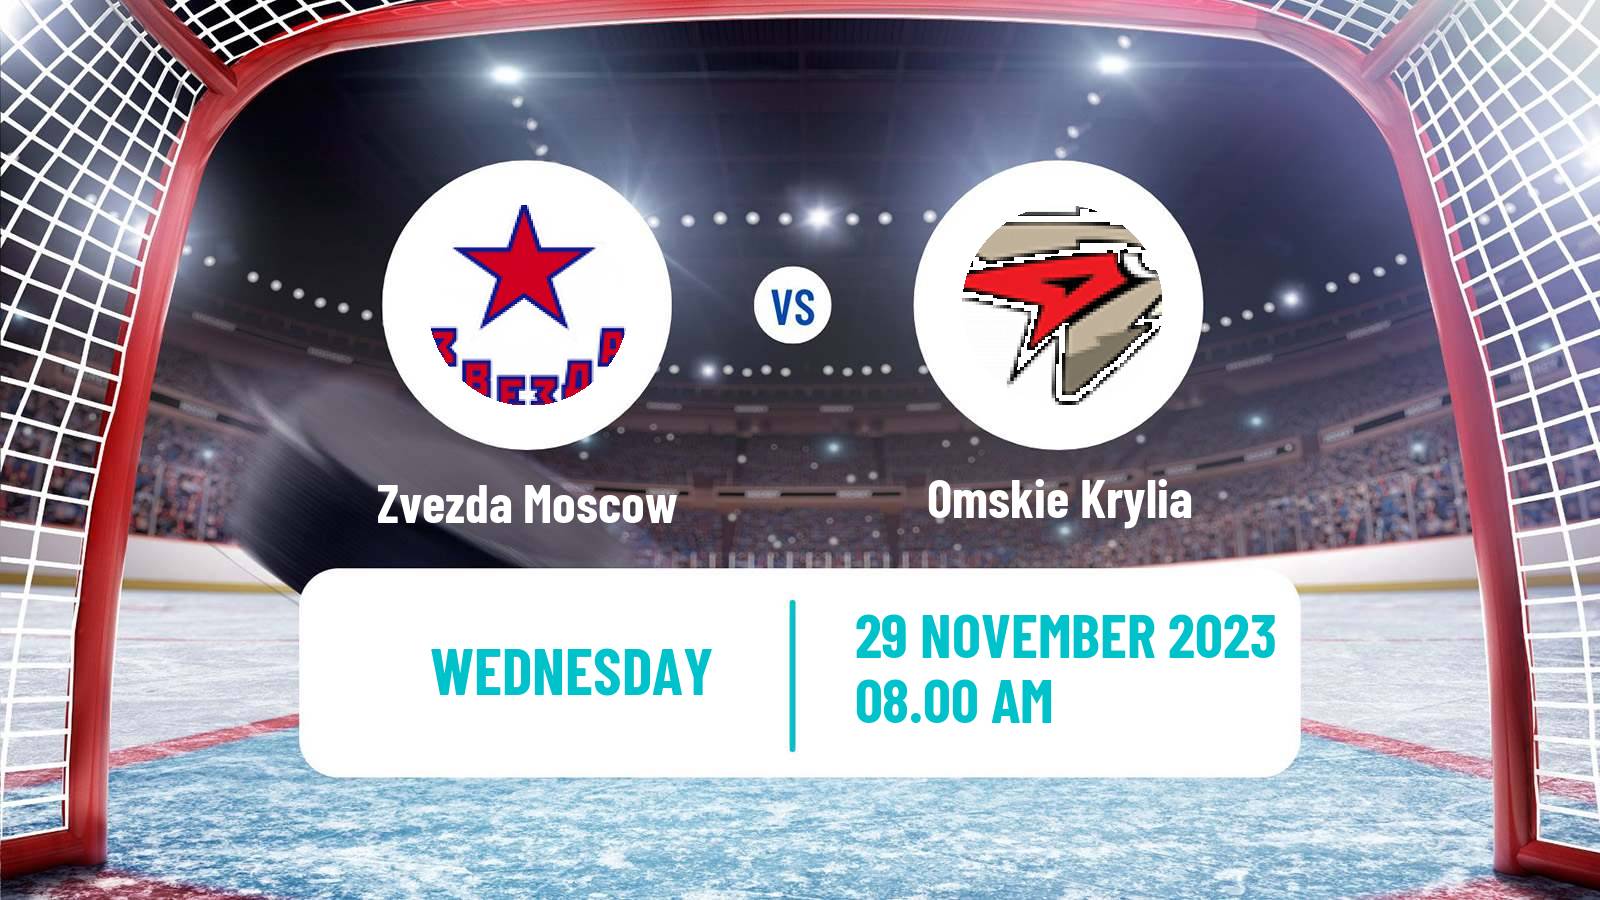 Hockey VHL Zvezda Moscow - Omskie Krylia